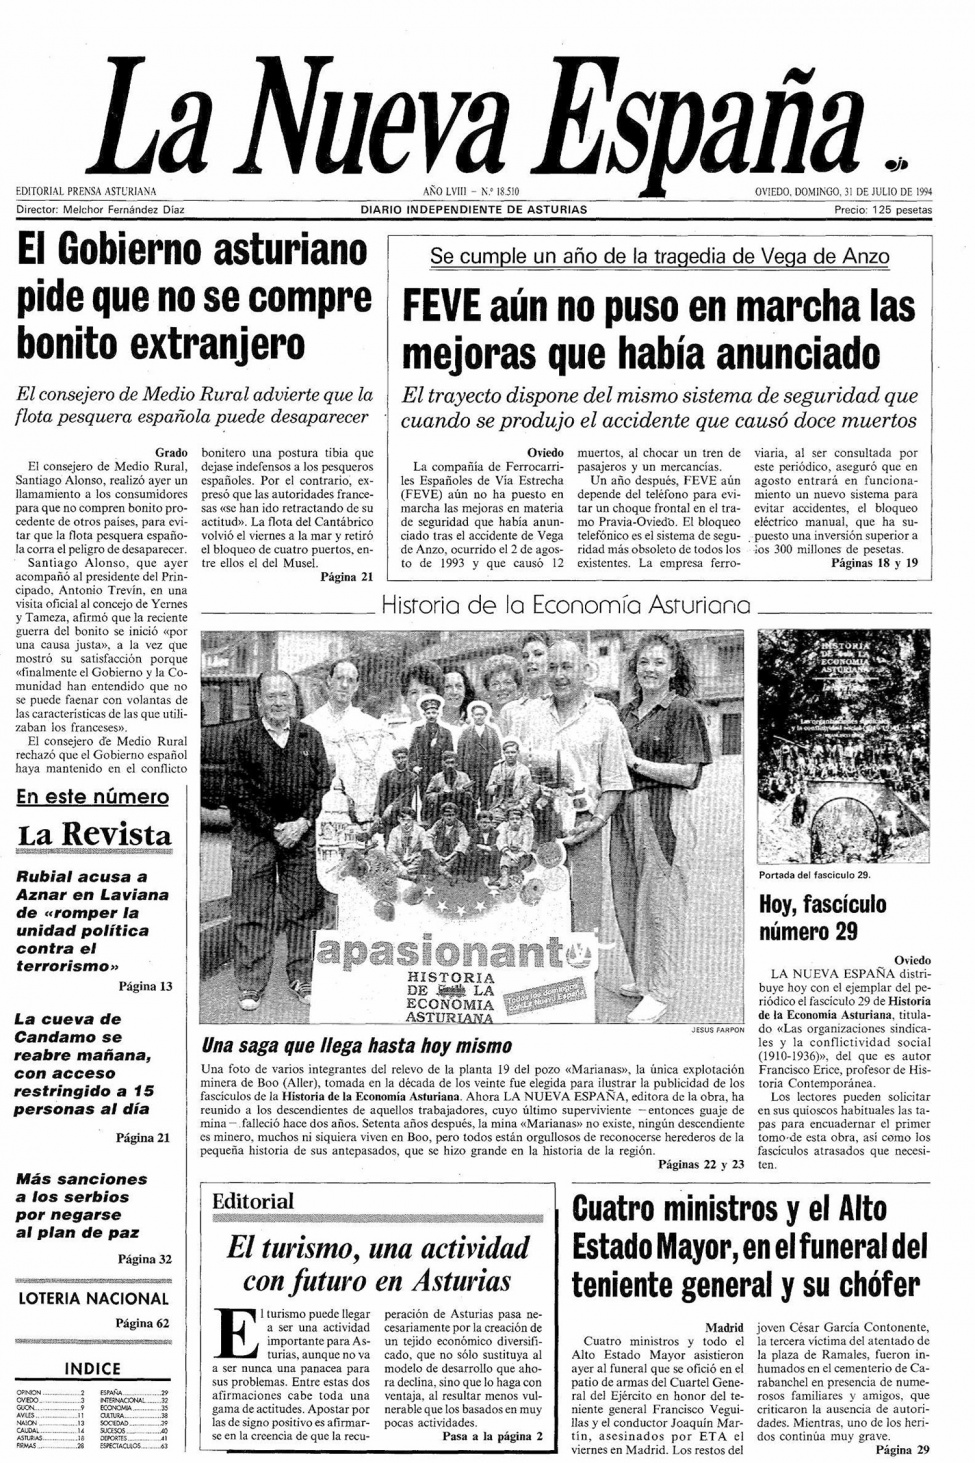 Portada del Domingo, 31 de Julio de 1994